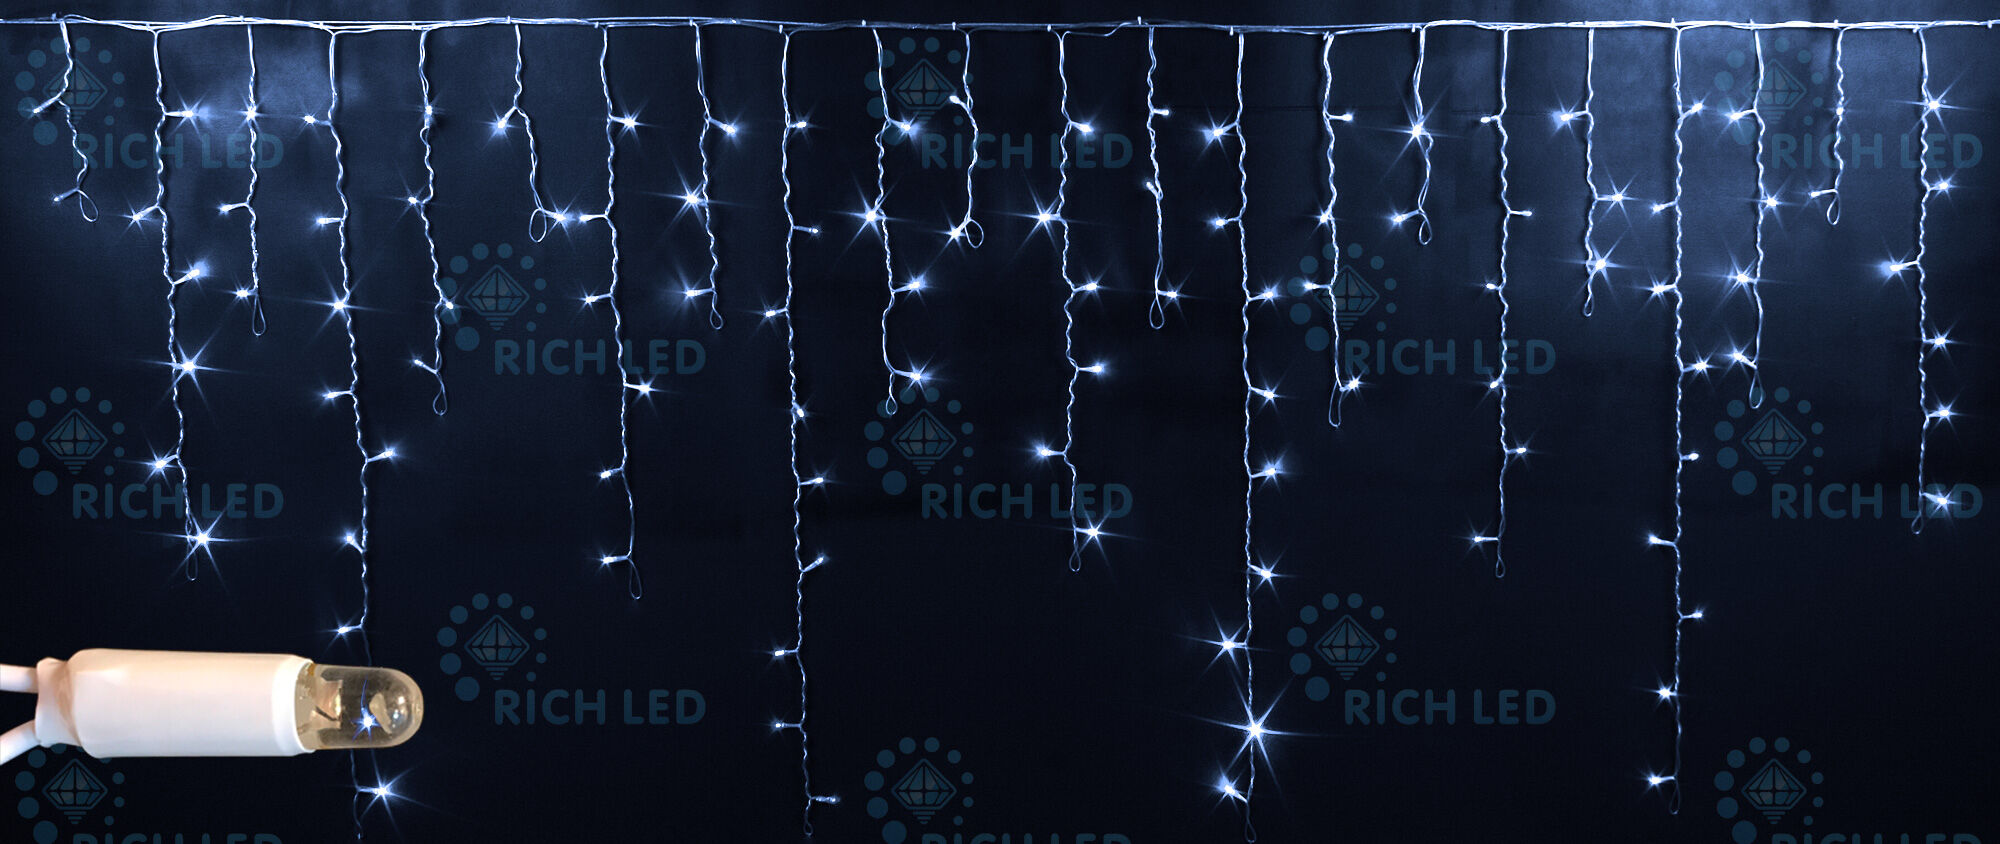 Светодиодная бахрома Rich LED, 3*0.9 м, влагозащитный колпачок, белая, прозрачный провод, RICH LED